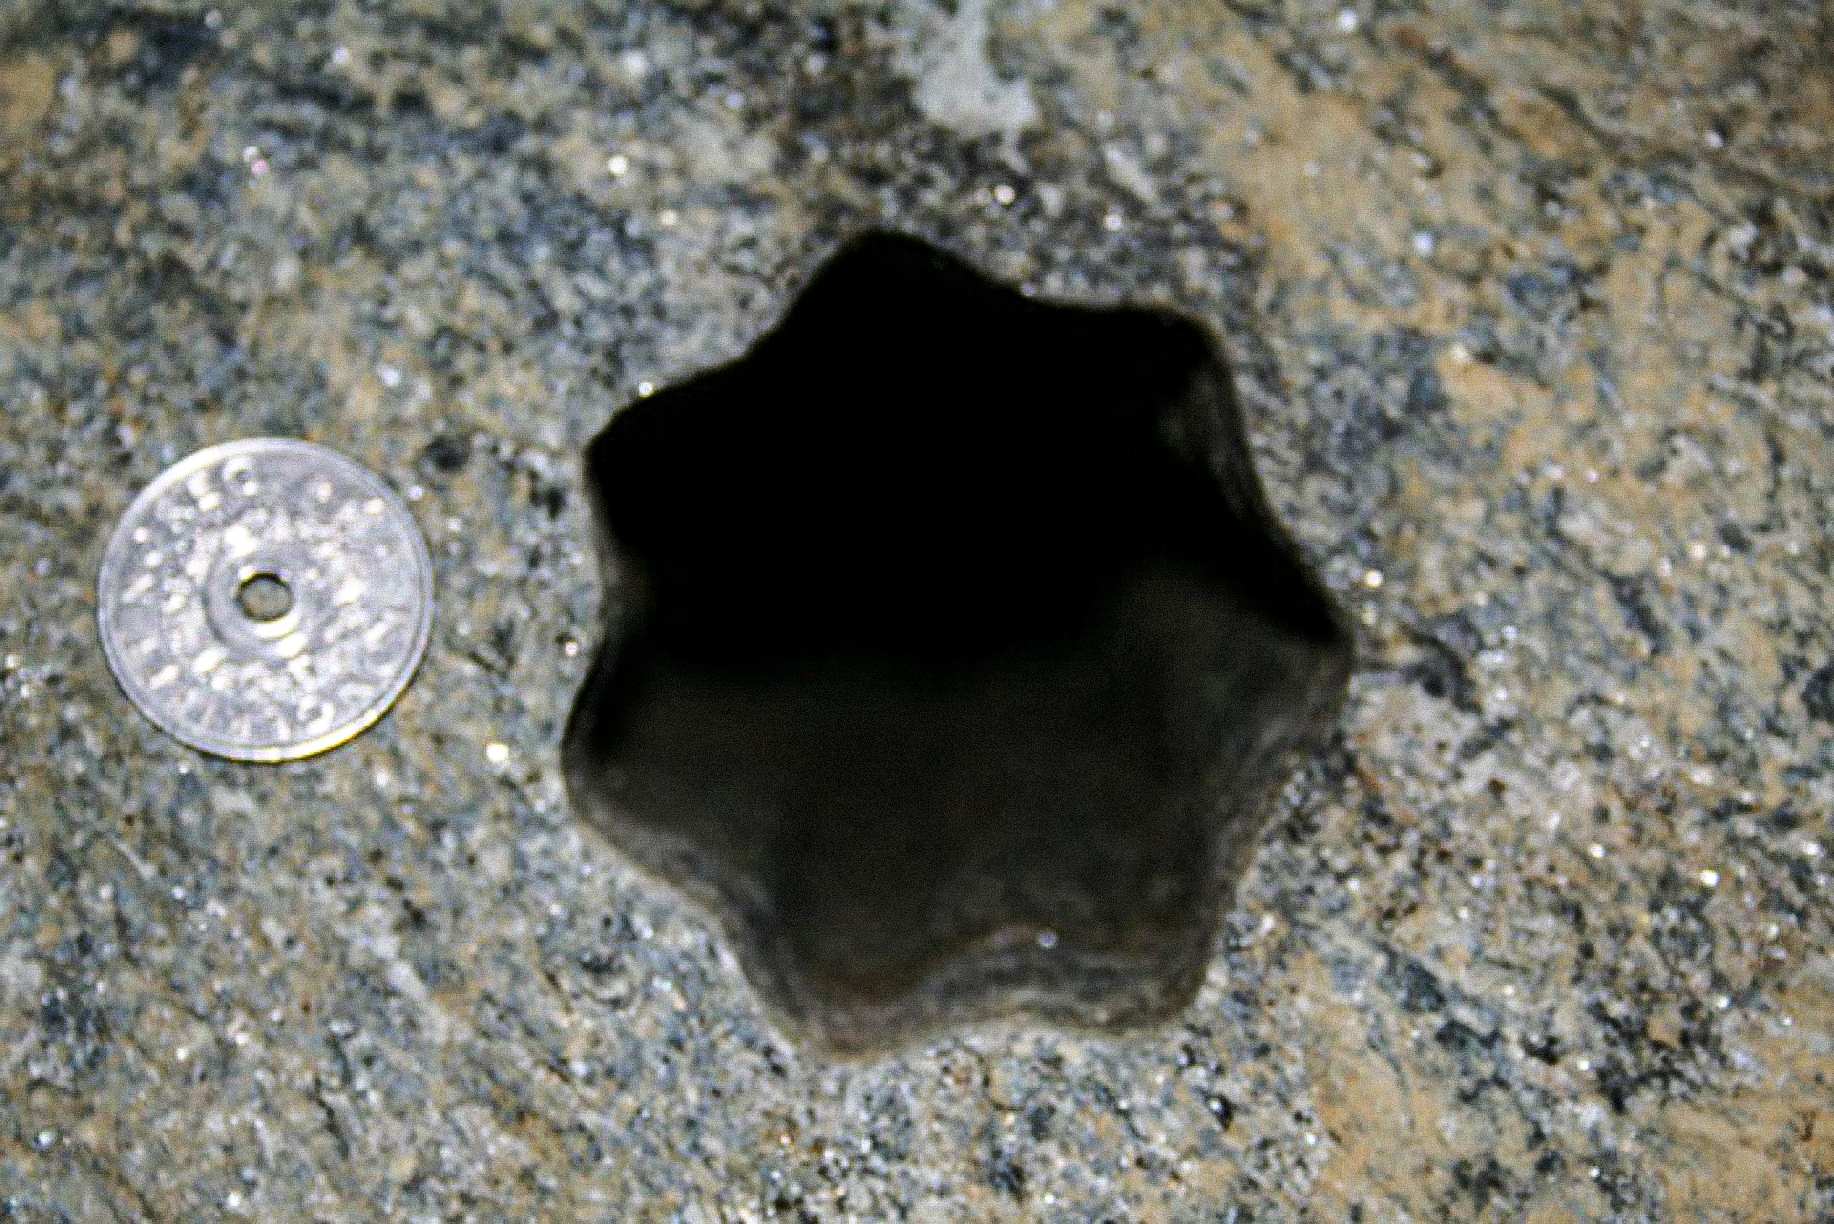 Это отверстие в форме звезды (с семью сторонами) было найдено подрядчиками в пятницу 30 ноября 2007 года в Волде, Норвегия. Диаметр норвежской монеты 5 крон составляет 25 мм. Отверстие около 65 - 70 мм в диаметре.